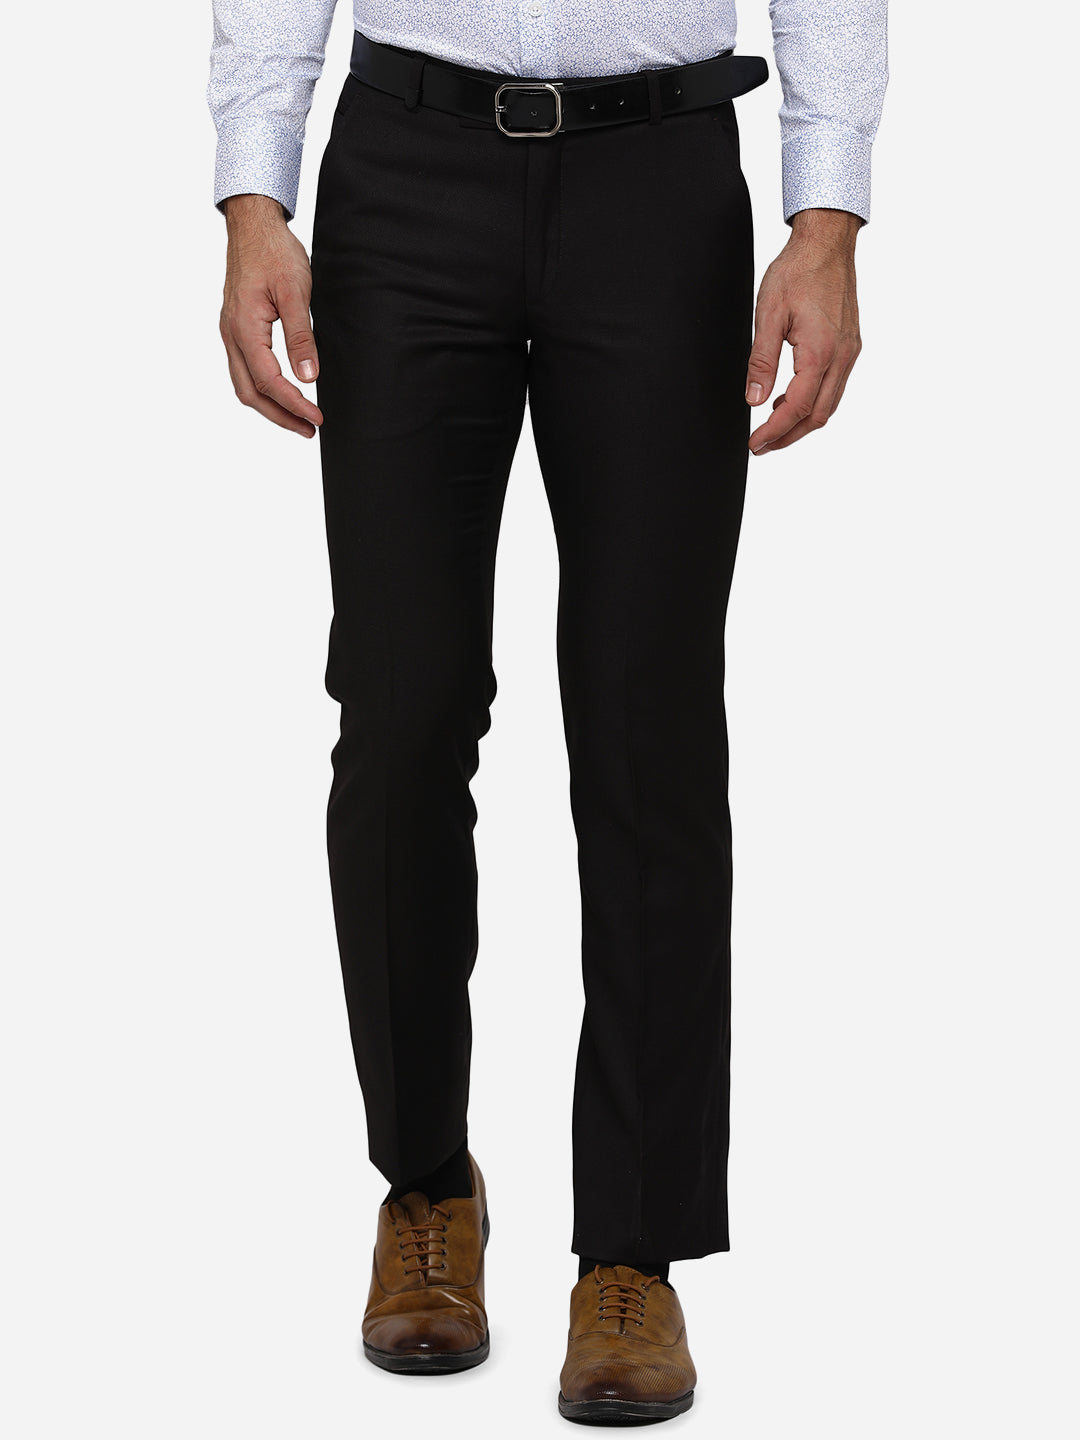 Plain Men Brown Formal Trouser, Slim Fit at Rs 290 in Bhilwara | ID:  27523689712